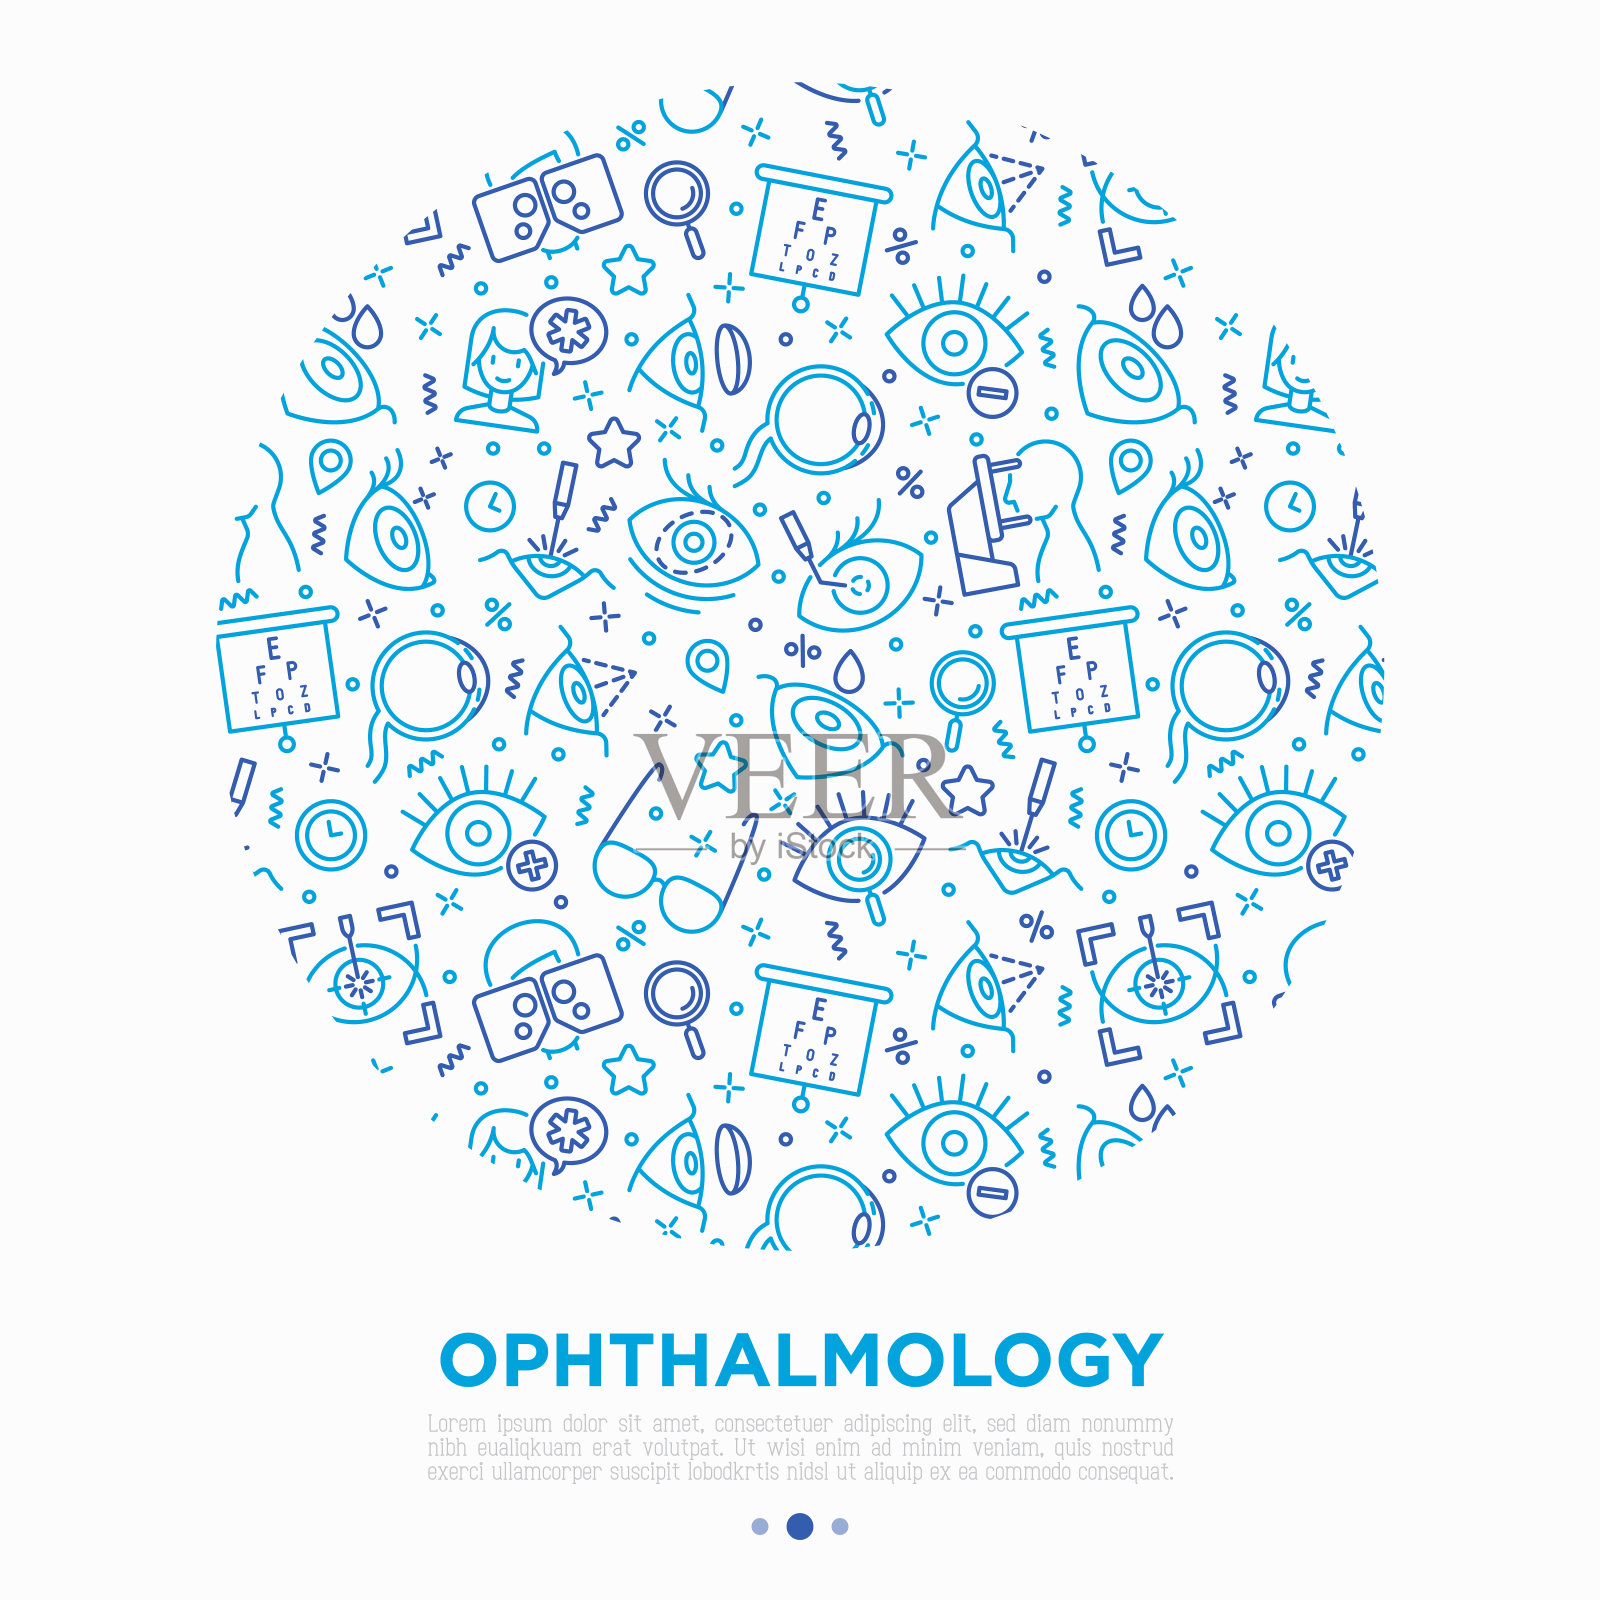 眼科学概念圈中的细线图标:激光眼科手术、视力测试、眼药水、隐形眼镜、白内障、散光、光透视、自动屈光仪、远视。矢量插图。插画图片素材